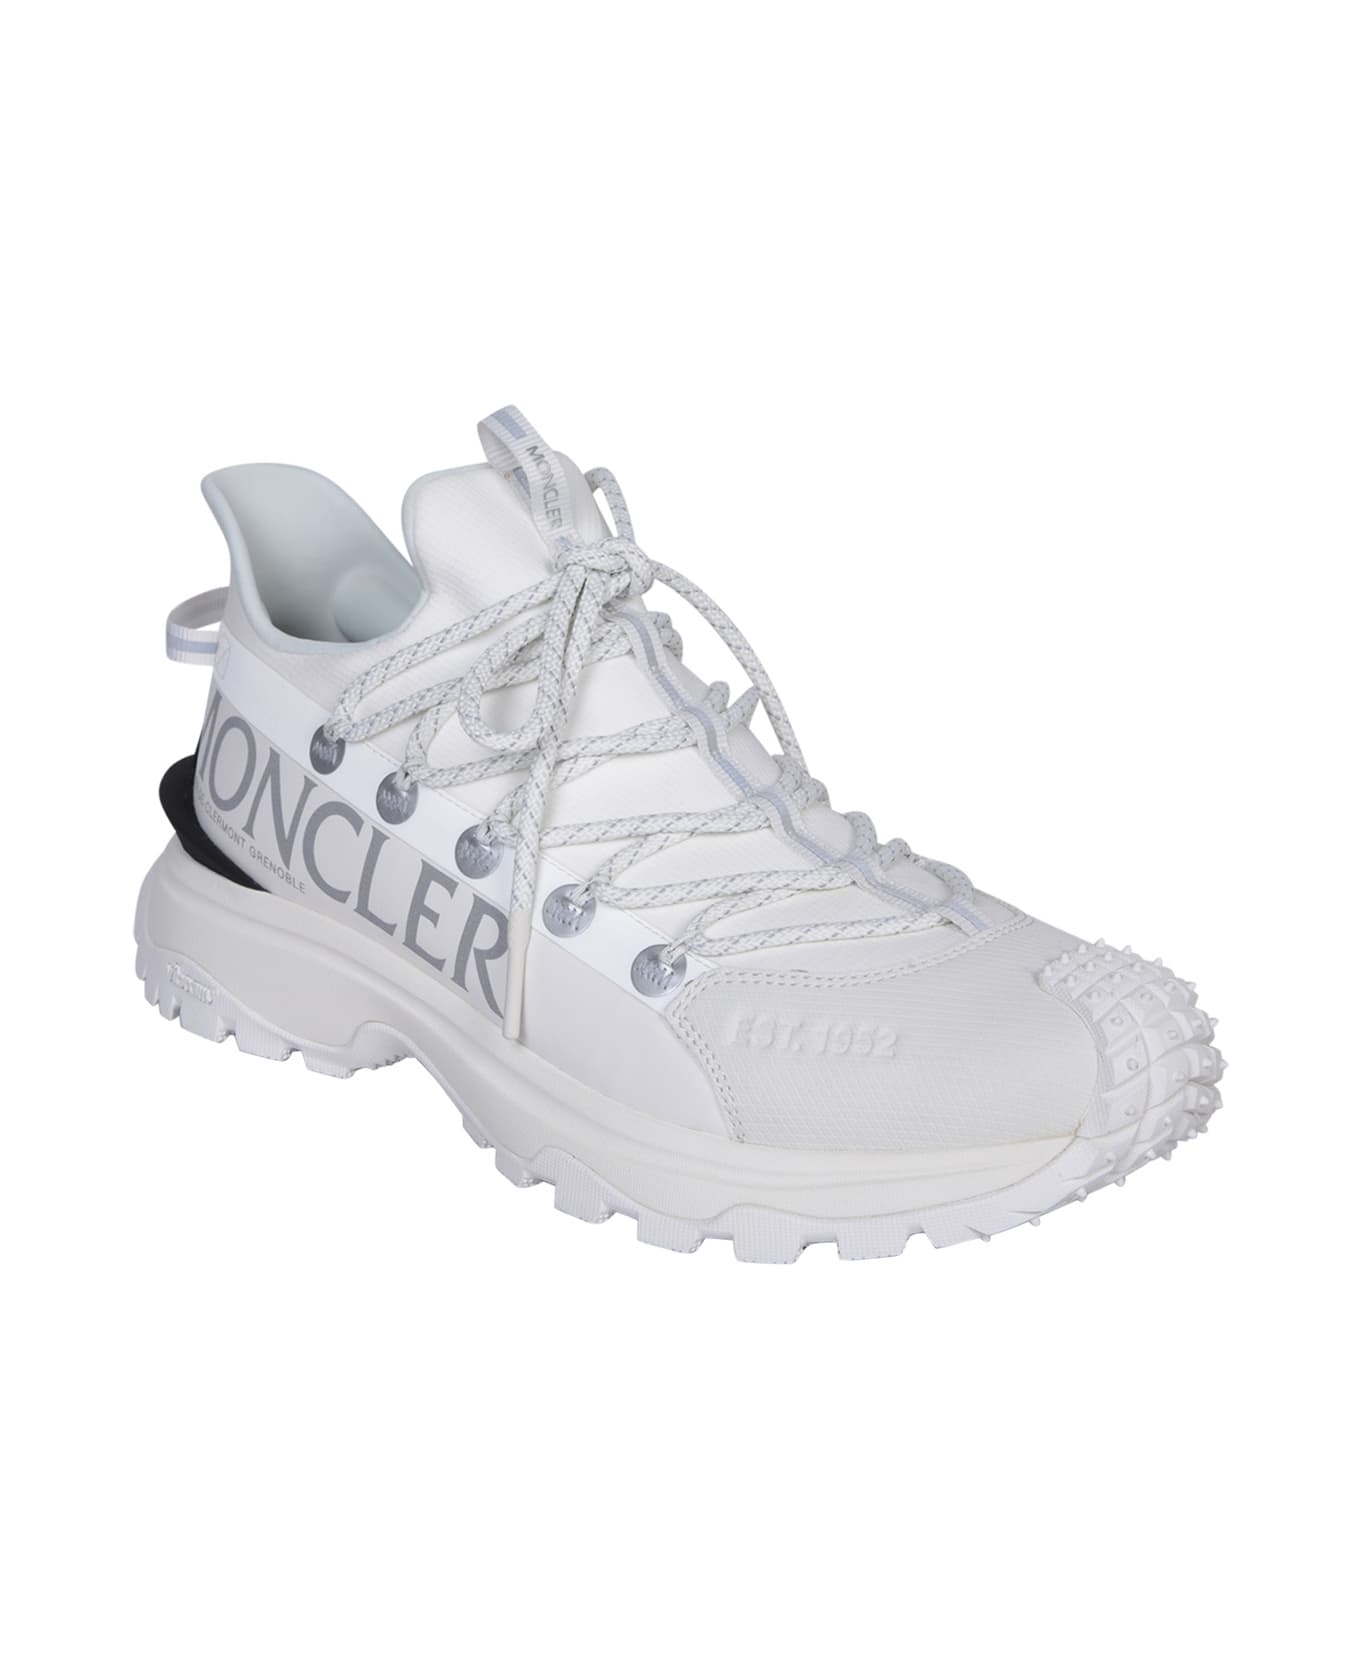 Moncler White Trailgrip Lite 2 Sneakers - White スニーカー